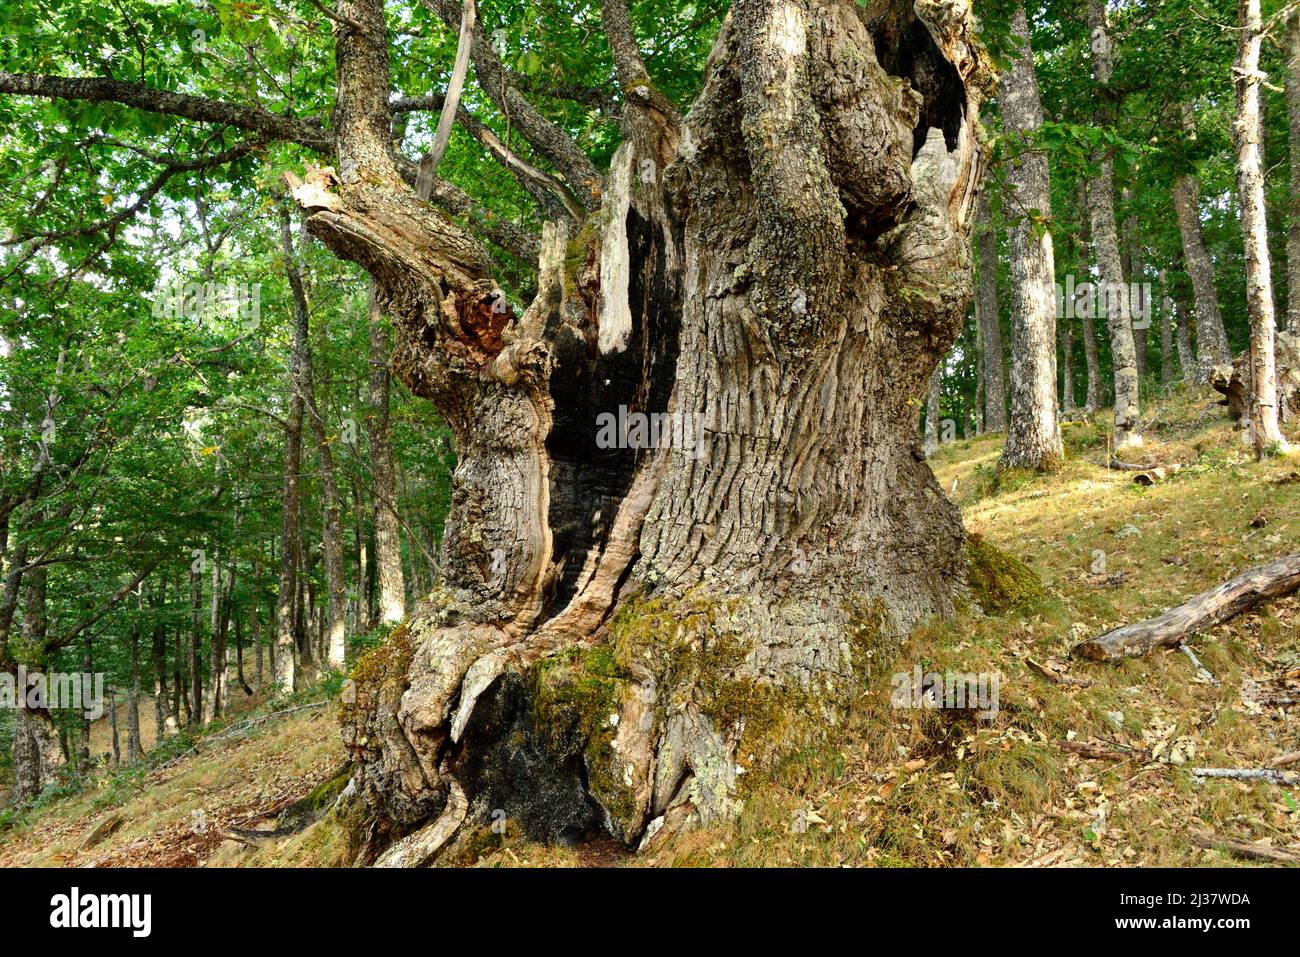 Le chêne sessile (Quercus petraea) est un arbre à feuilles caduques originaire d'Europe centrale, des montagnes du sud de l'Europe et de l'Asie mineure. Cette photo a été prise dans Banque D'Images